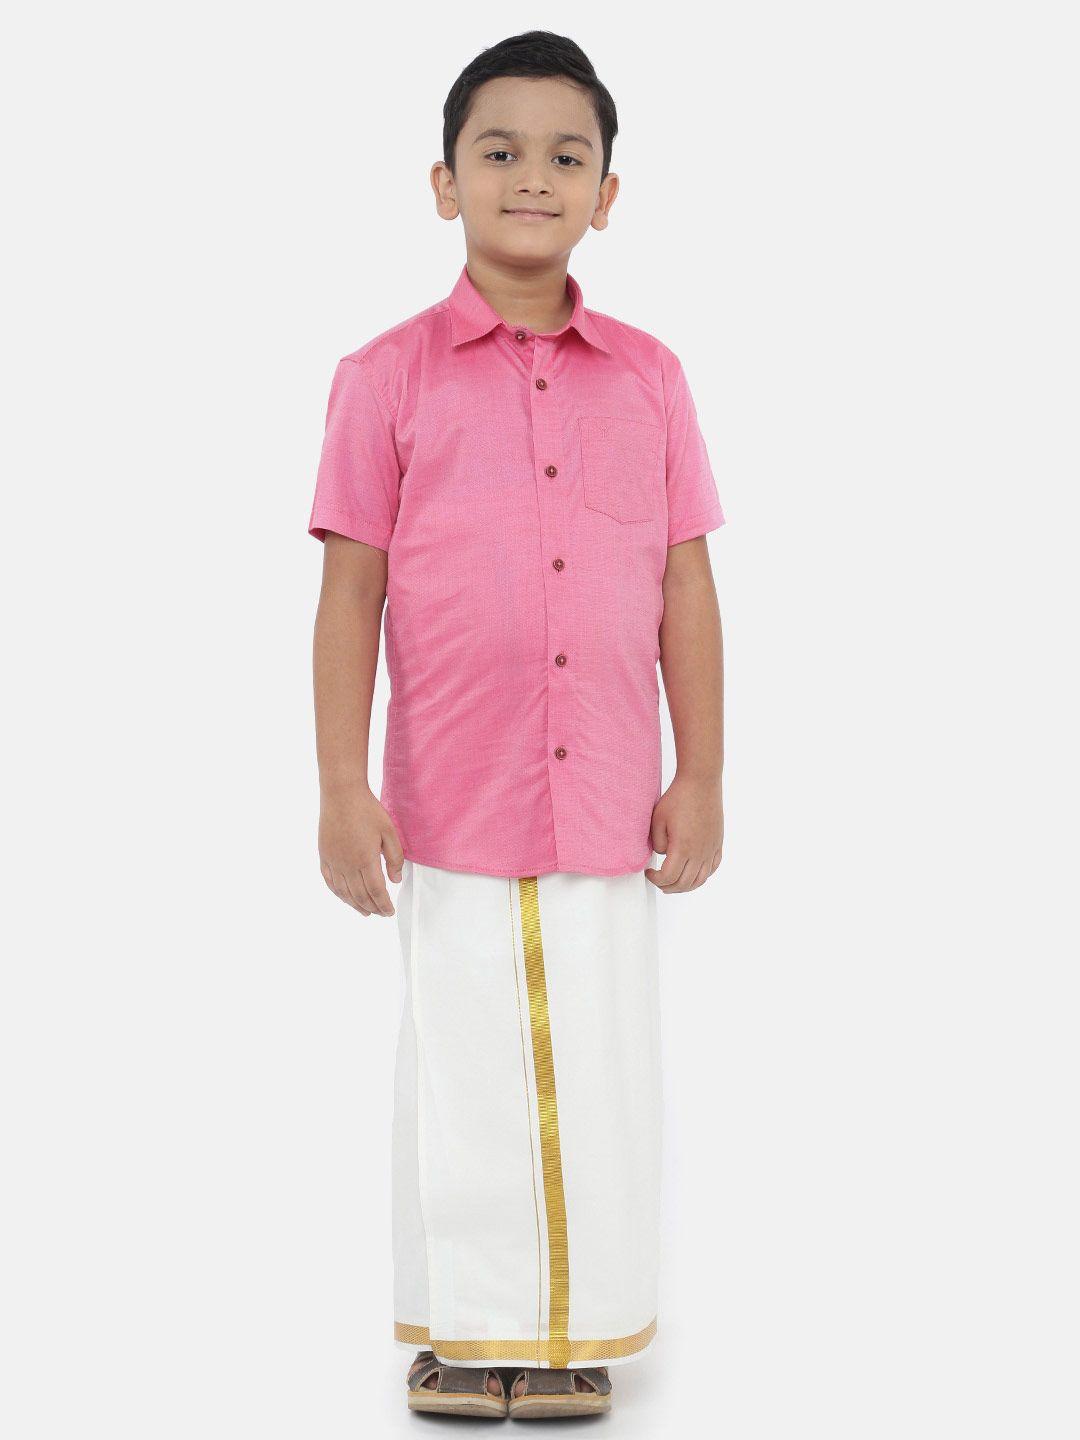 ramraj boys pink & white shirt with dhoti